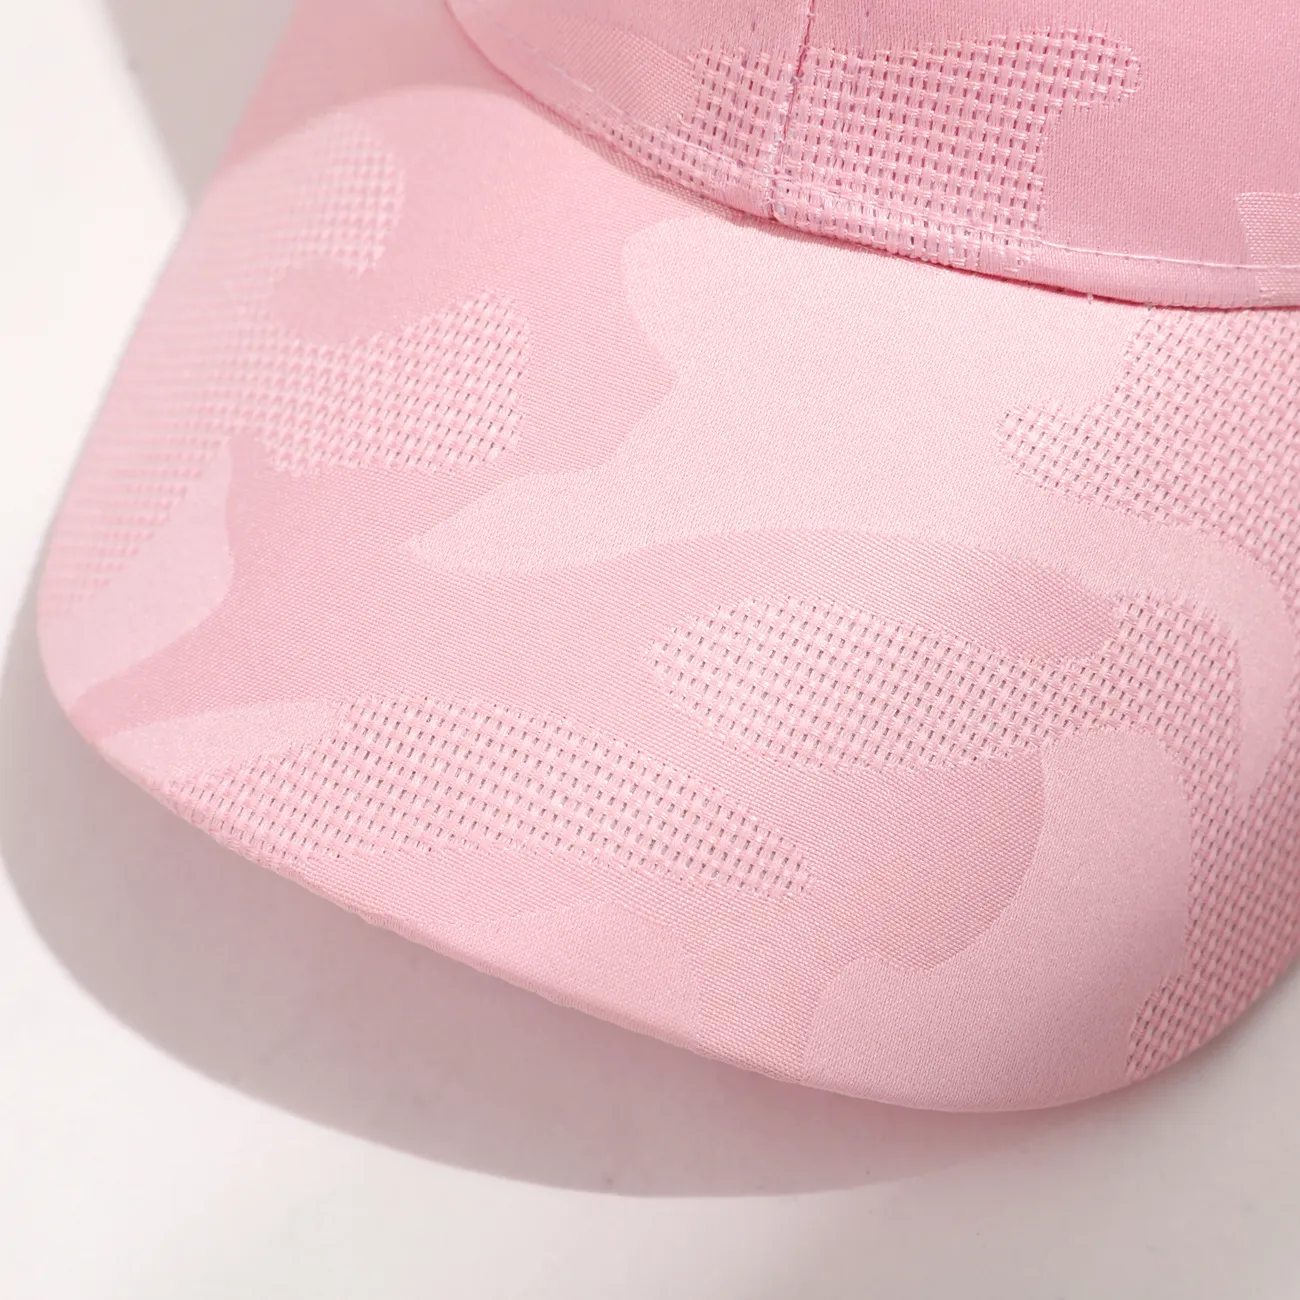 Kinder Mädchen/Junge sportliche modische und trendige Pferdeschwanz-Mesh-Baseballkappe  rosa big image 1